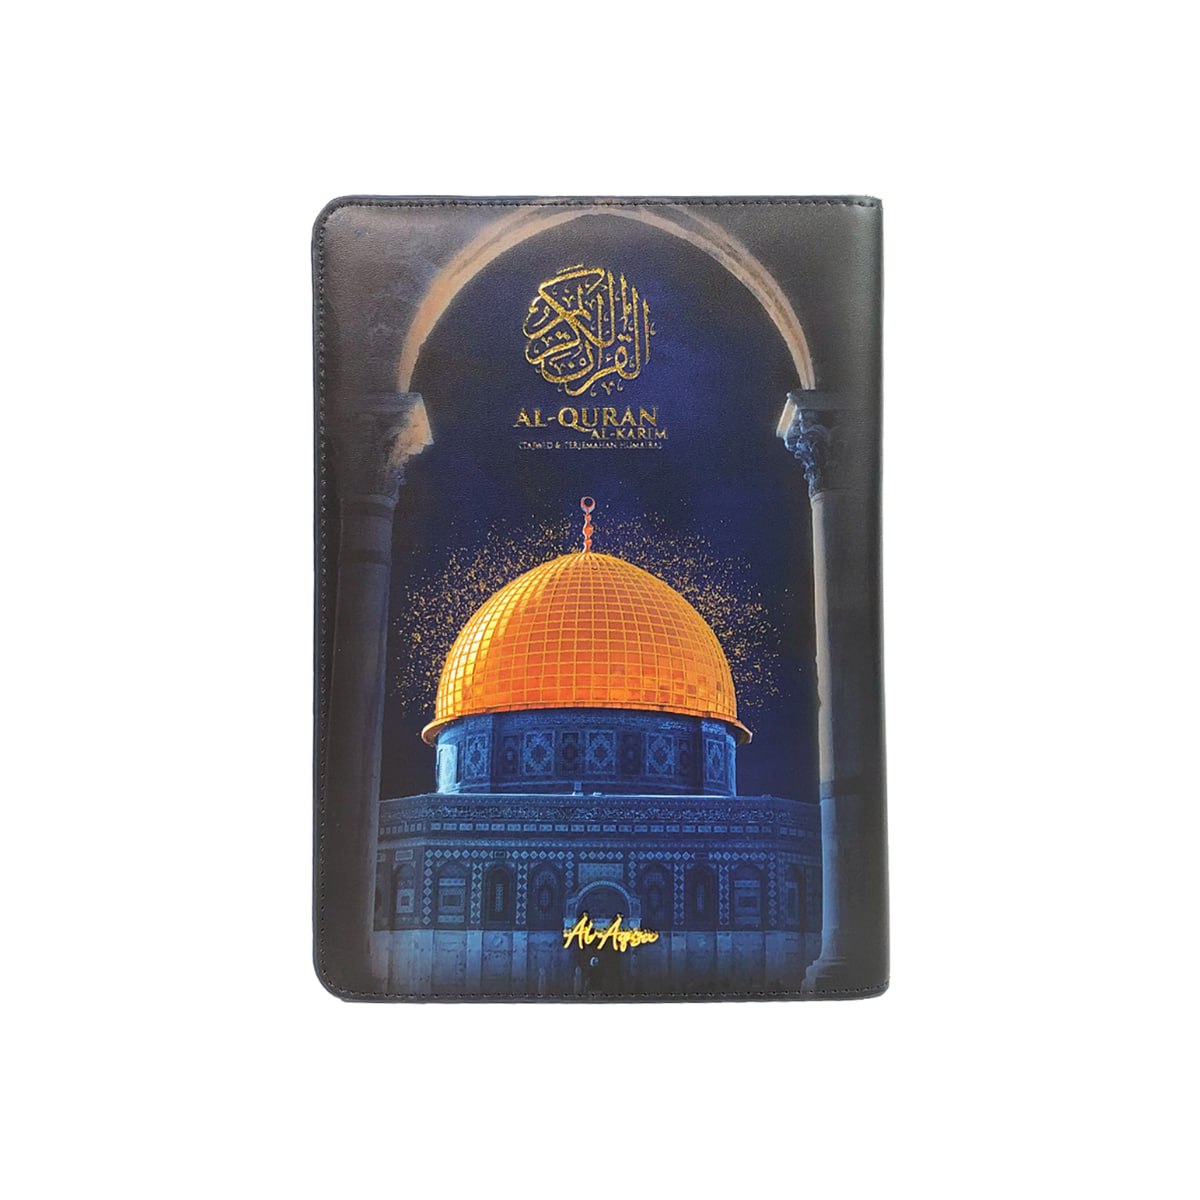 Al-Quran Al-Aqsa (With 199 Taggings)